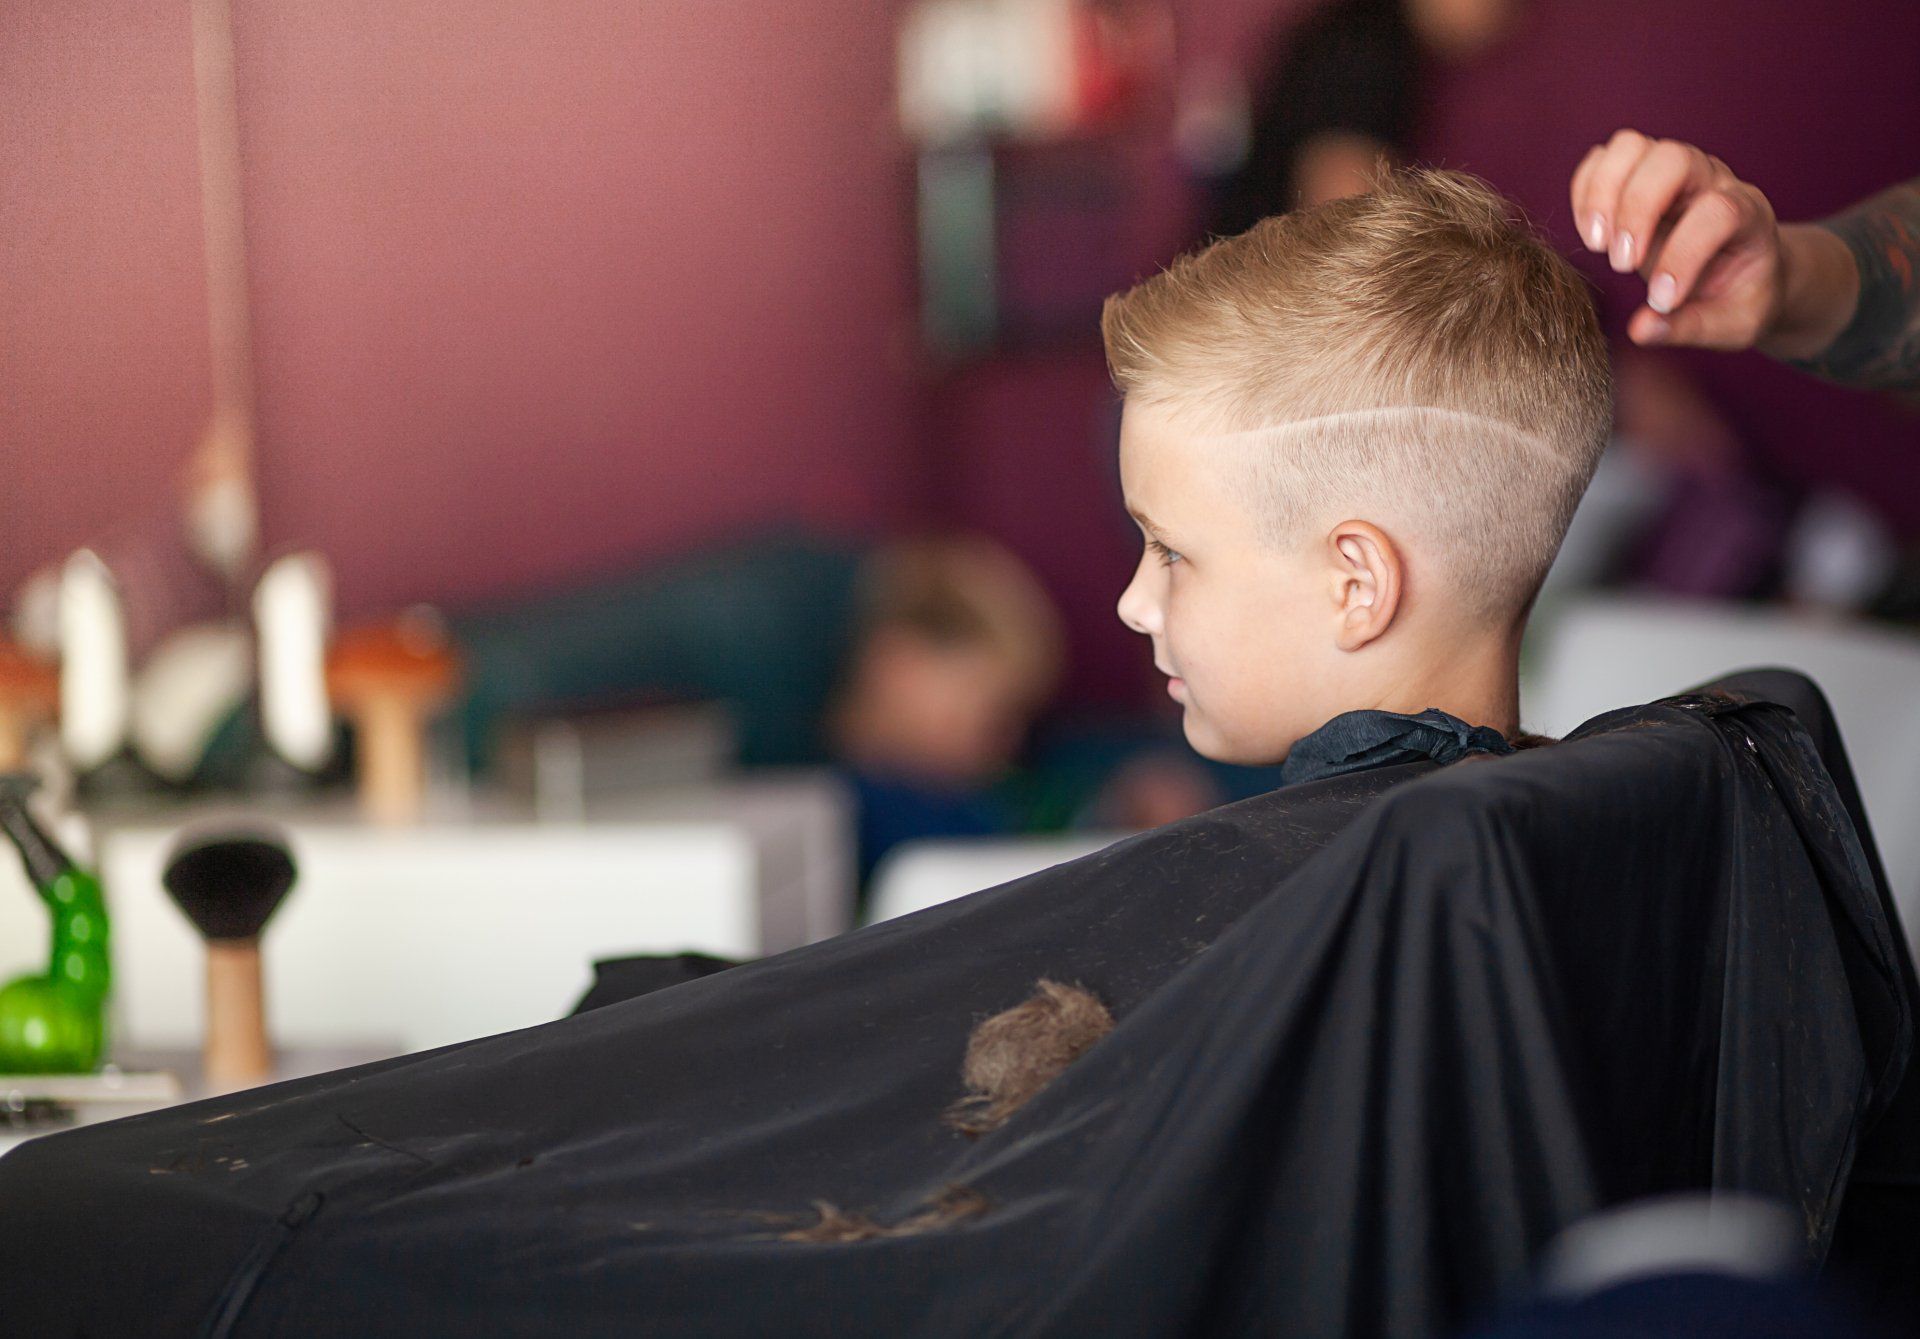 a schoolchild is getting hair cut in a beauty salon